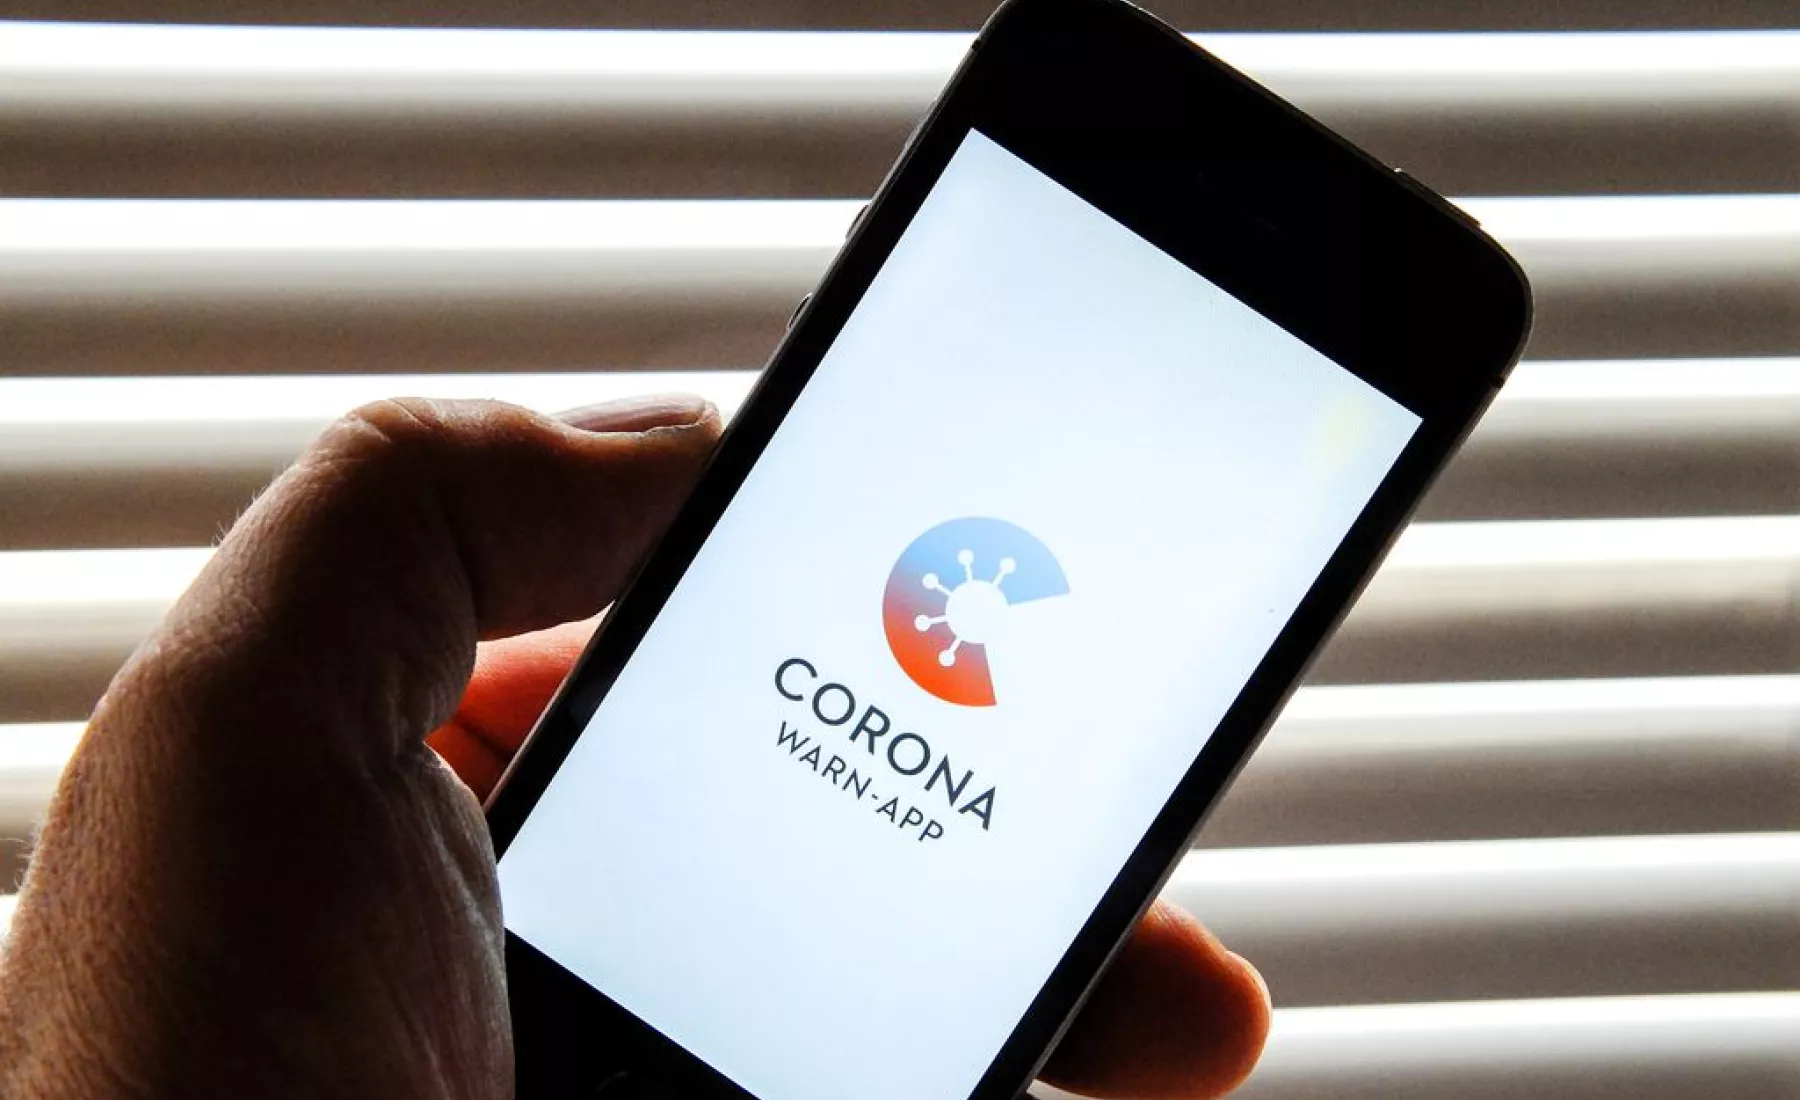 Die Corona-Warn-App soll dabei helfen, die Infektionsketten frühzeitig zu erkennen und zu durchbrechen